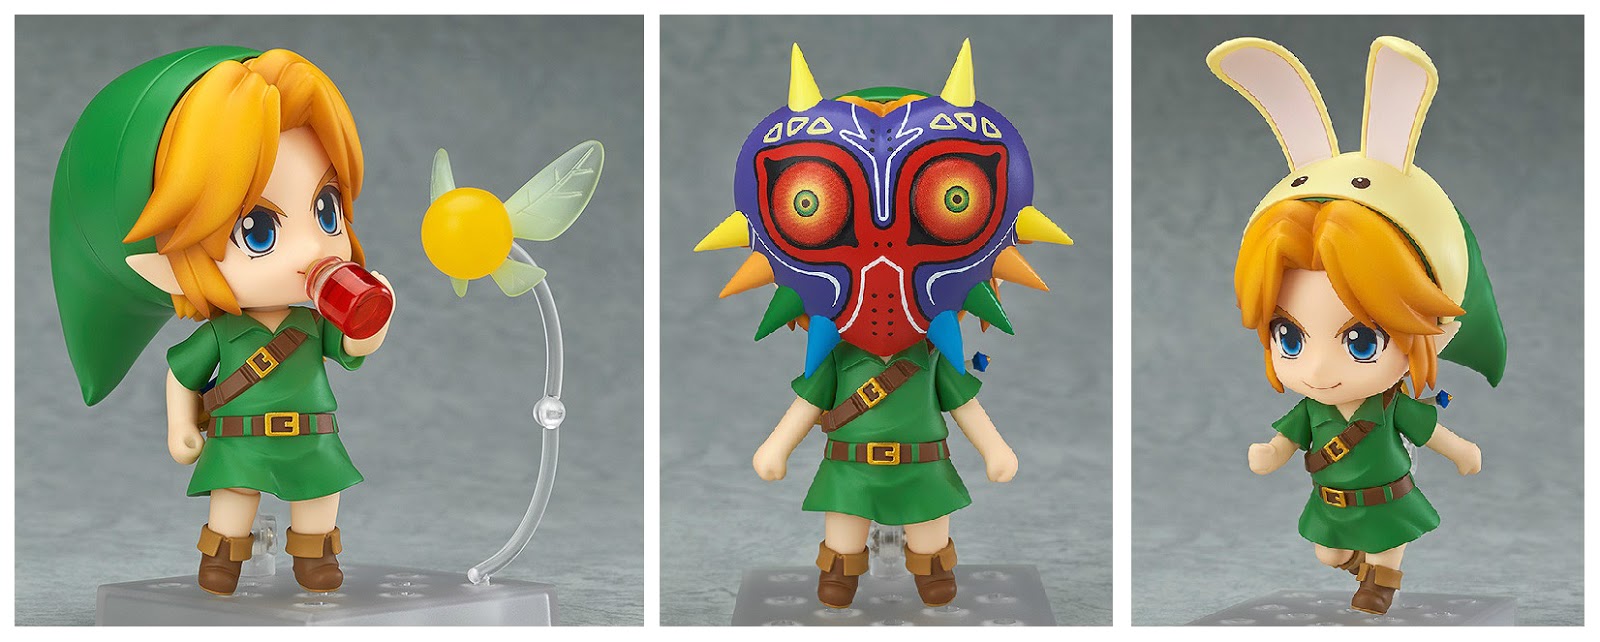 Nendoroid The Legend of Zelda Link Majora's Mask 3D Ver. Figure